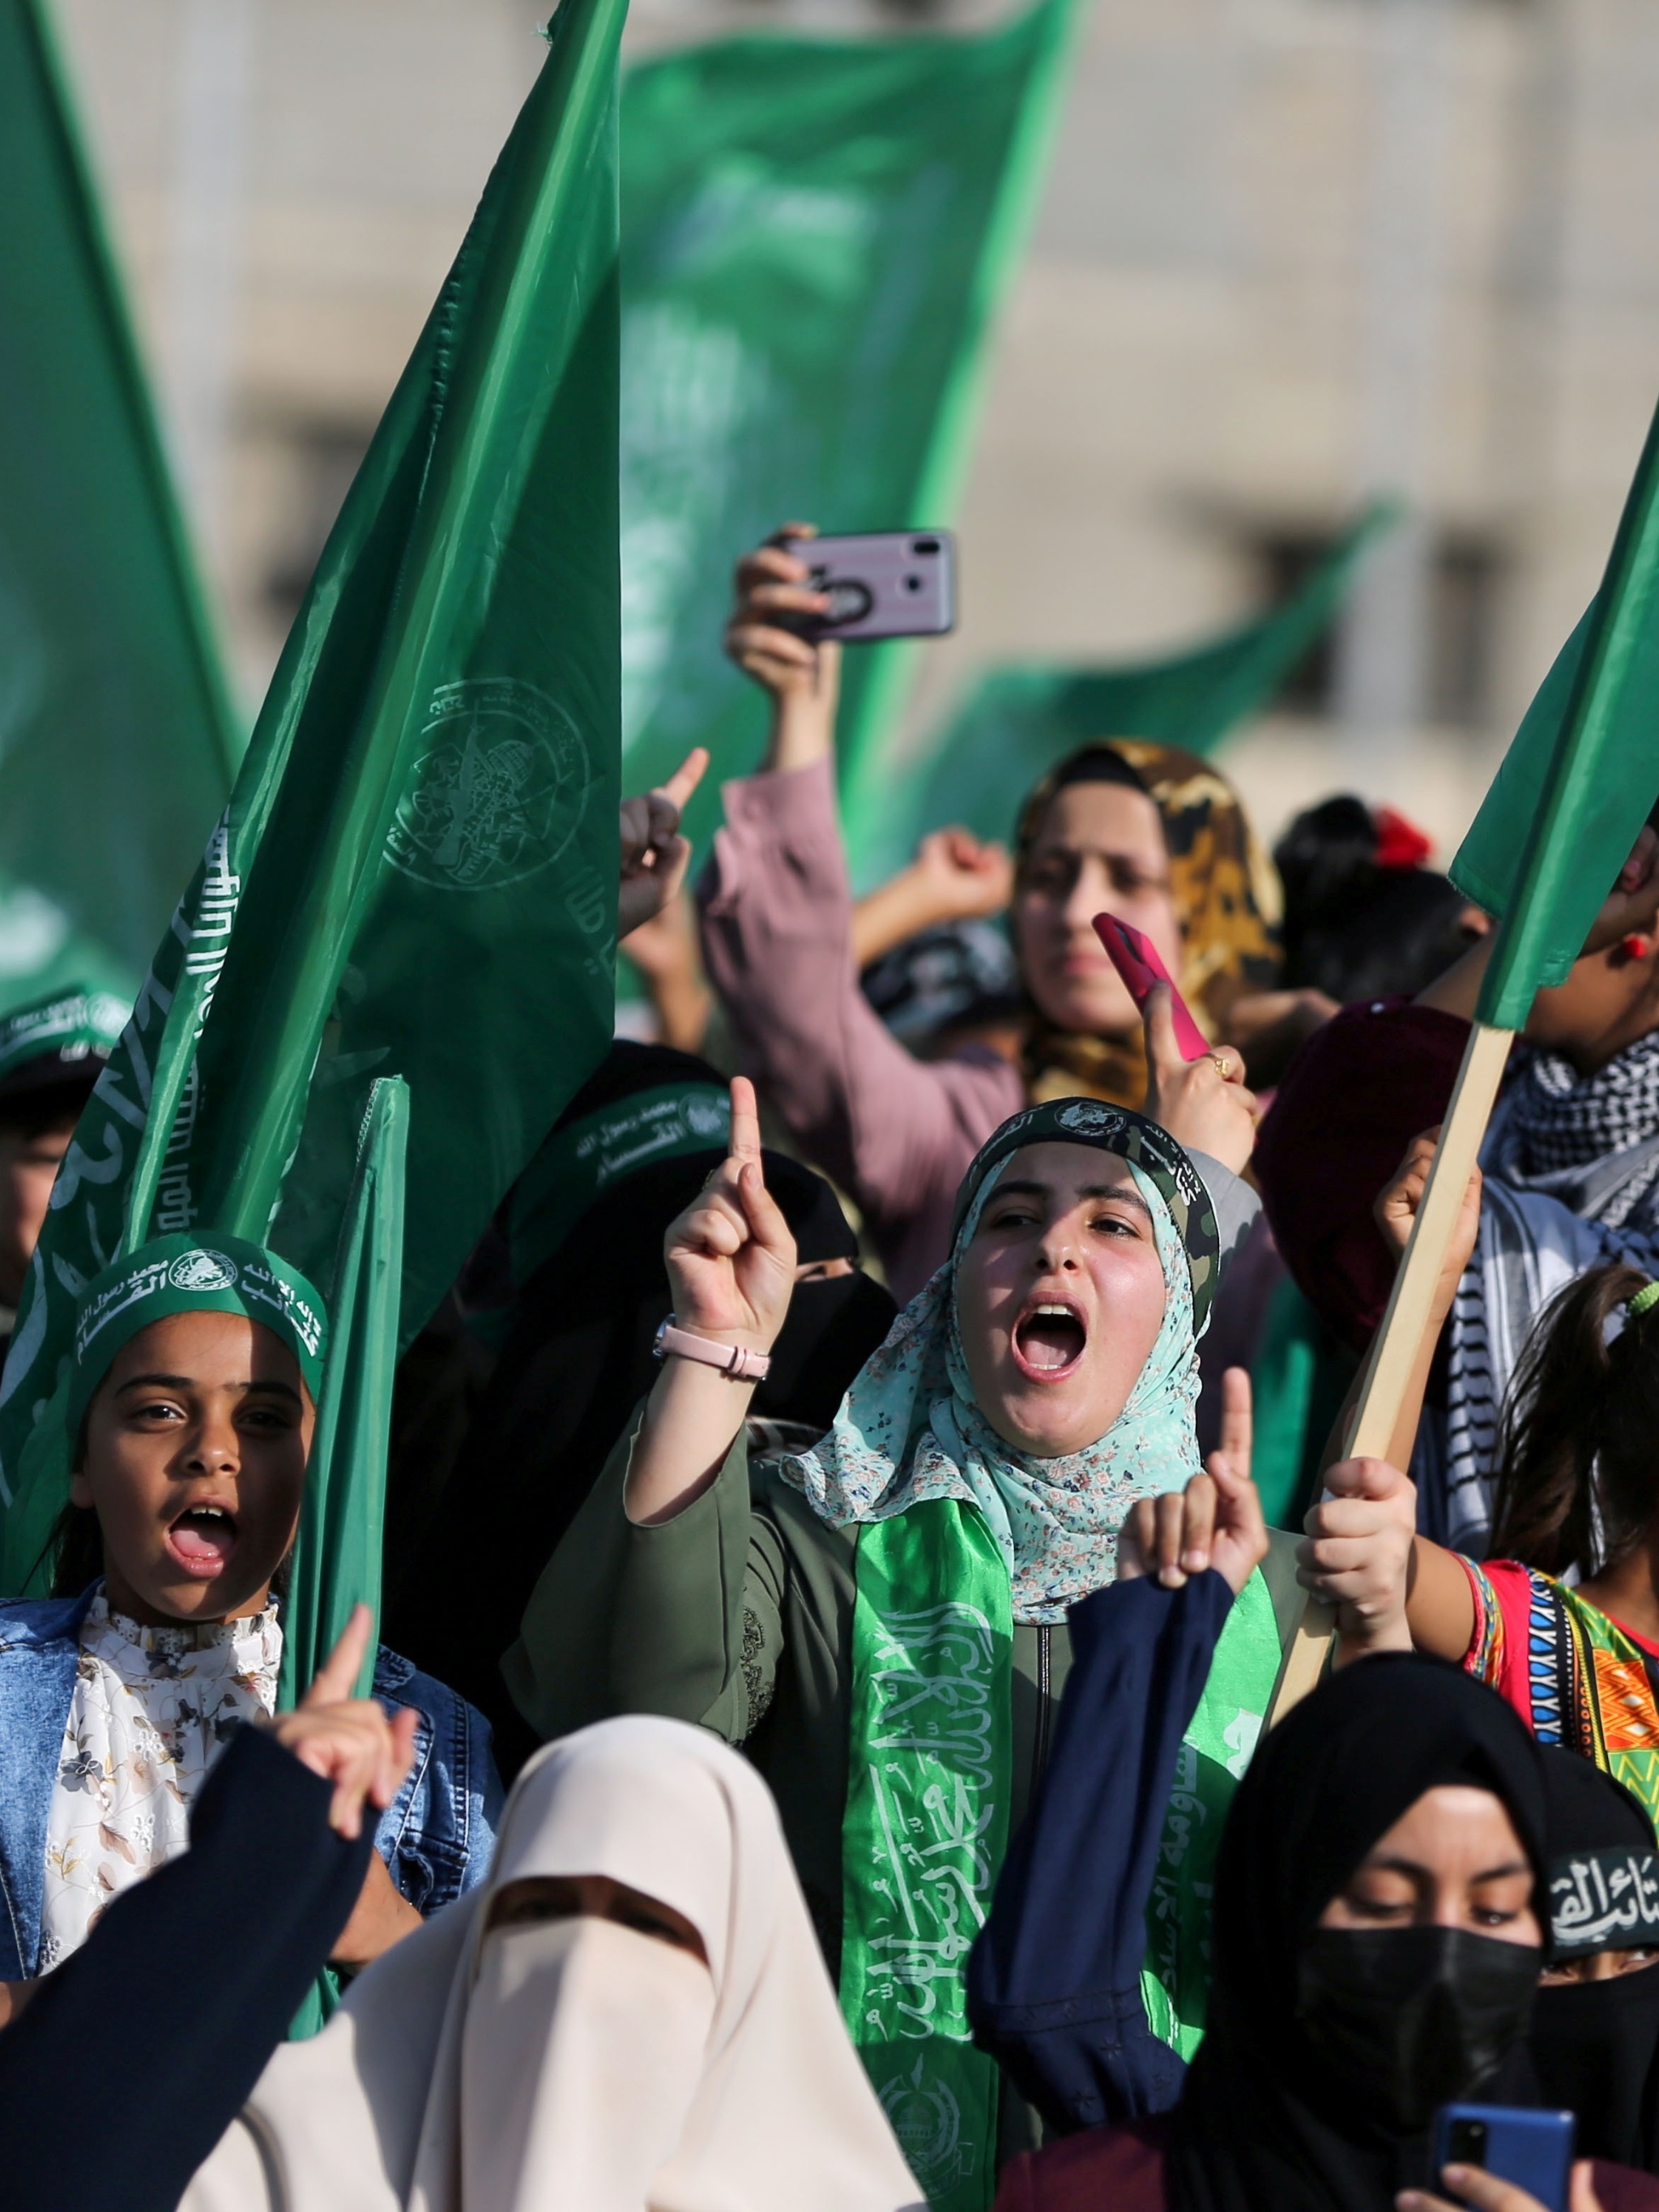 Hamas não reconhece Israel mas vai ter de viver com ele